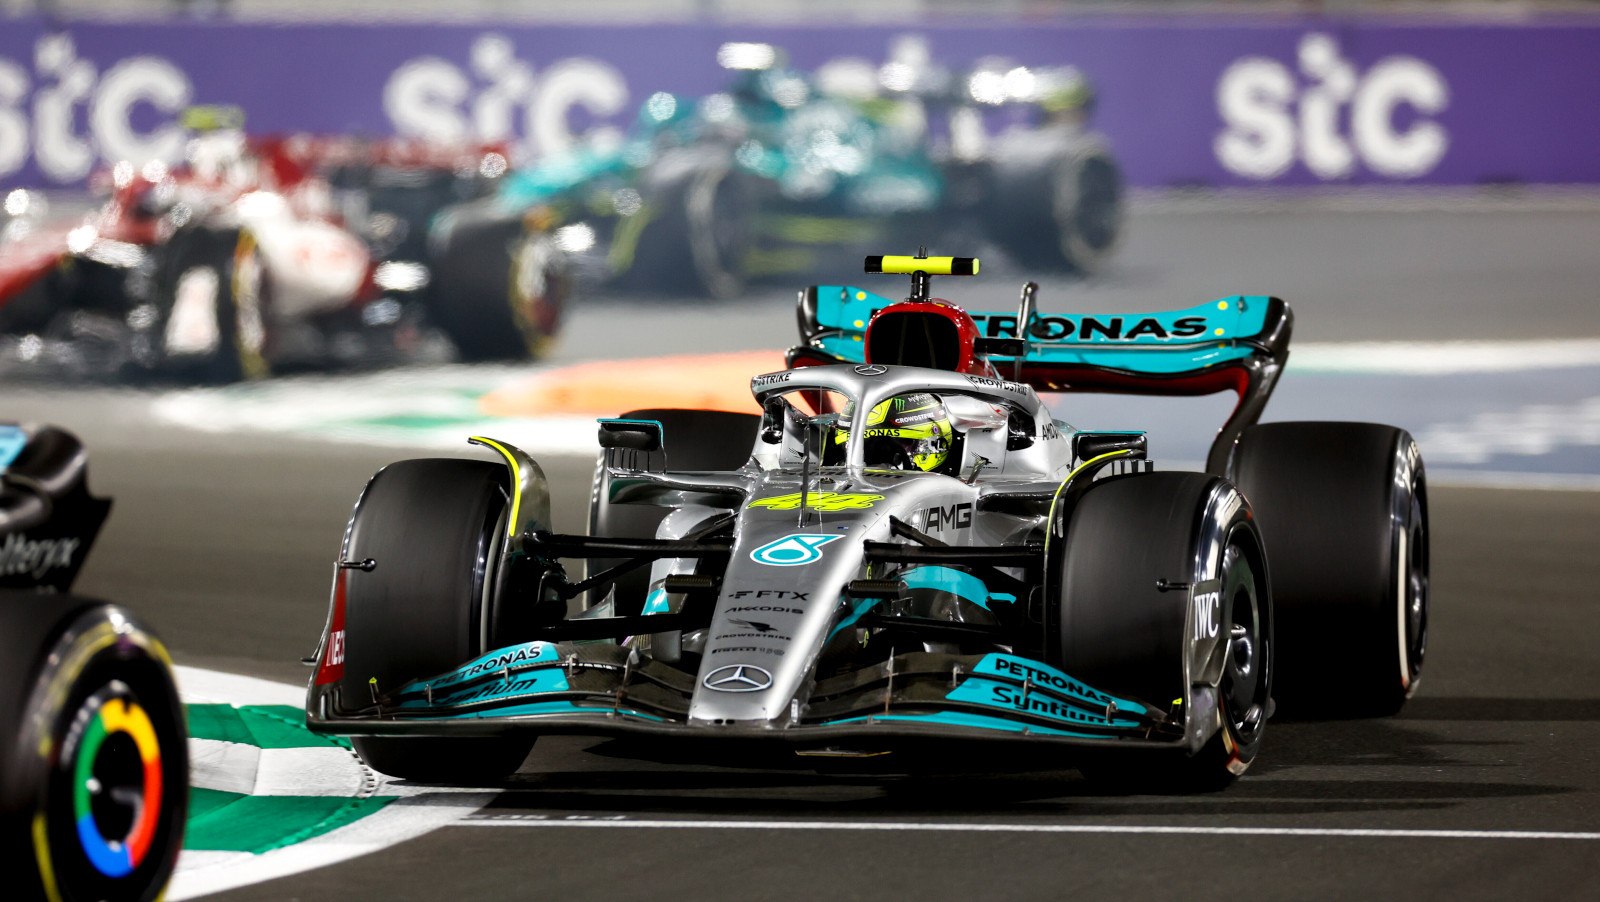 Lewis Hamilton in traffic in the race. Saudi Arabia March 2022